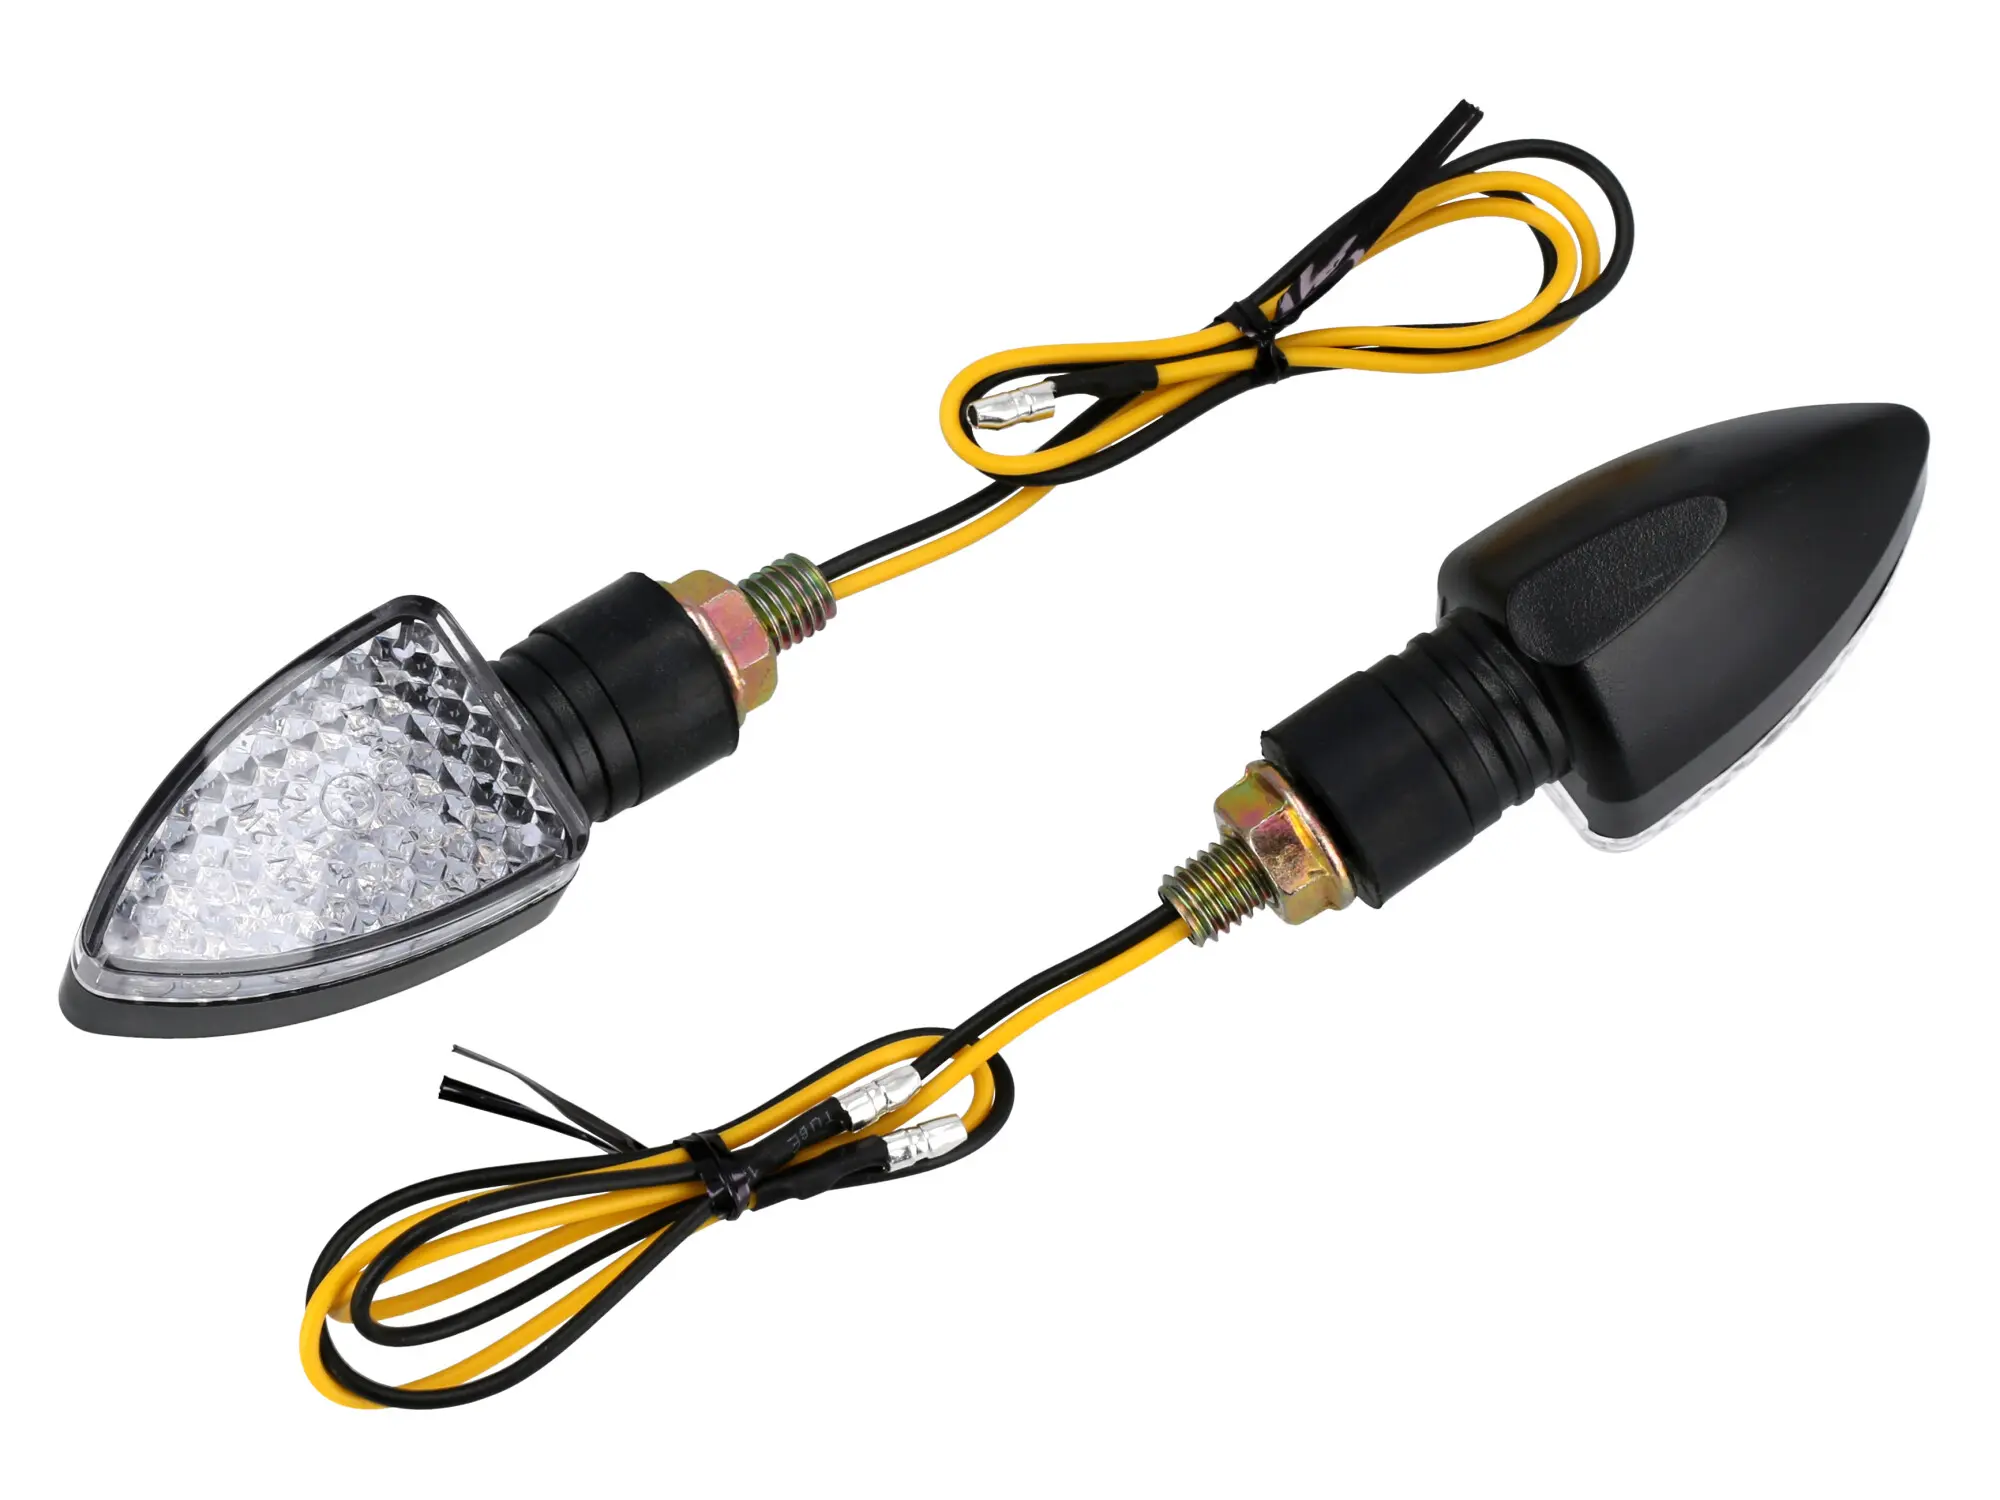 Set: 2x Blinker 12V LED, Dreieckform in Mattschwarz mit Klarglas, E-geprüft - für Moped und Motorrad, Item no: 10076881 - Image 1